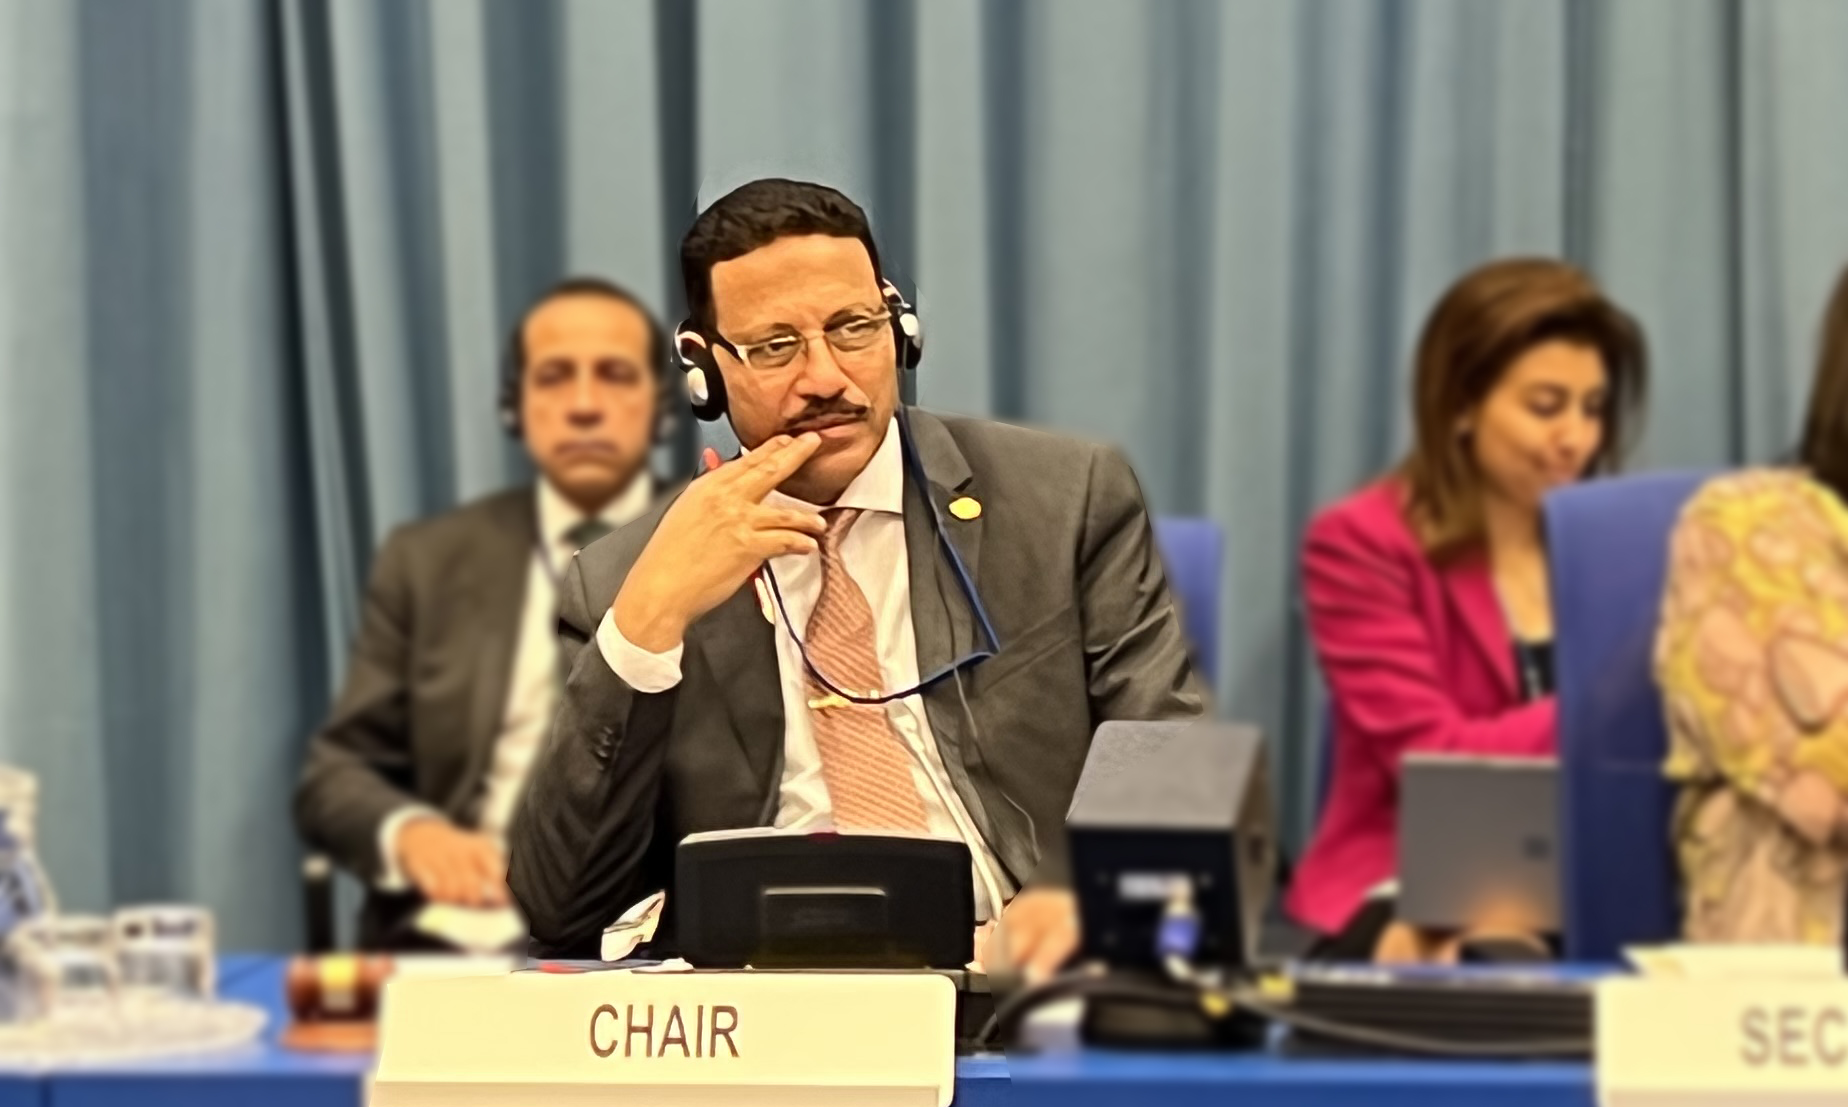 استمرار فعاليات جلسات مجموعات عمل اتفاقية الأمم المتحدة لمكافحة الفساد بفيينا لليوم الرابع برئاسة الوزير حسن عبد الشافي أحمد 